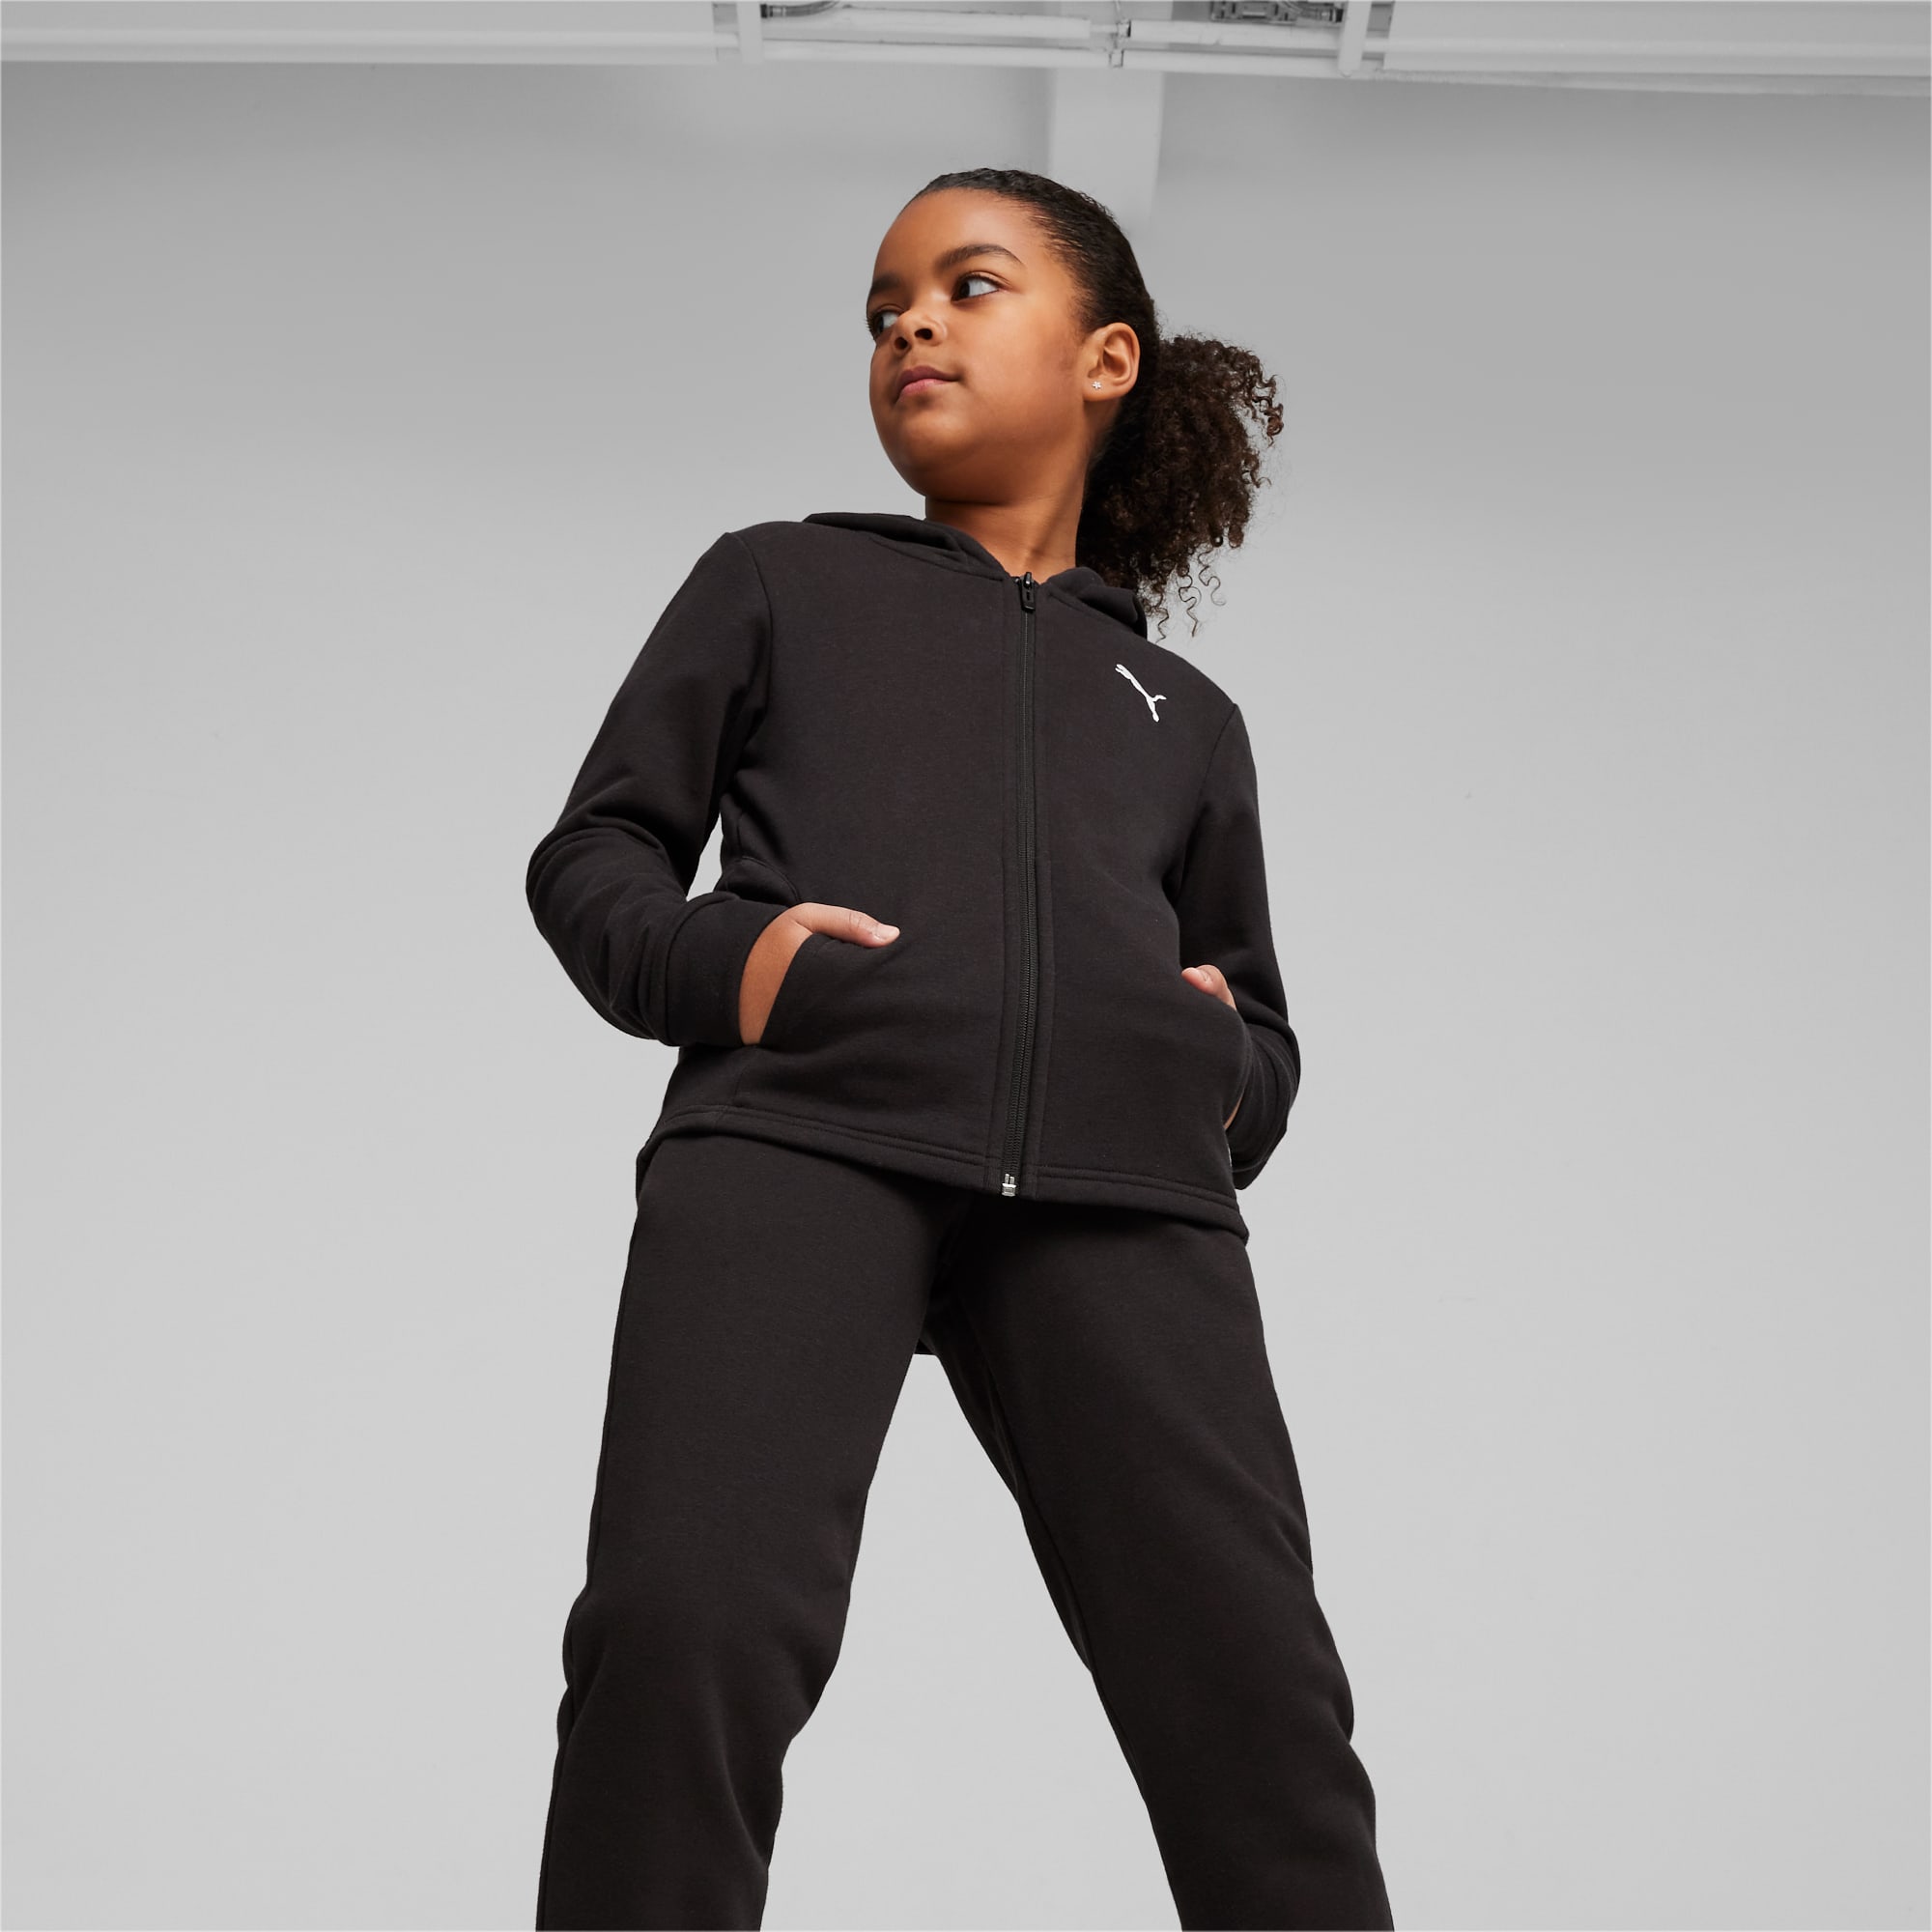 PUMA Chaussure Survêtement à Capuche Adolescent Pour Enfant, Noir